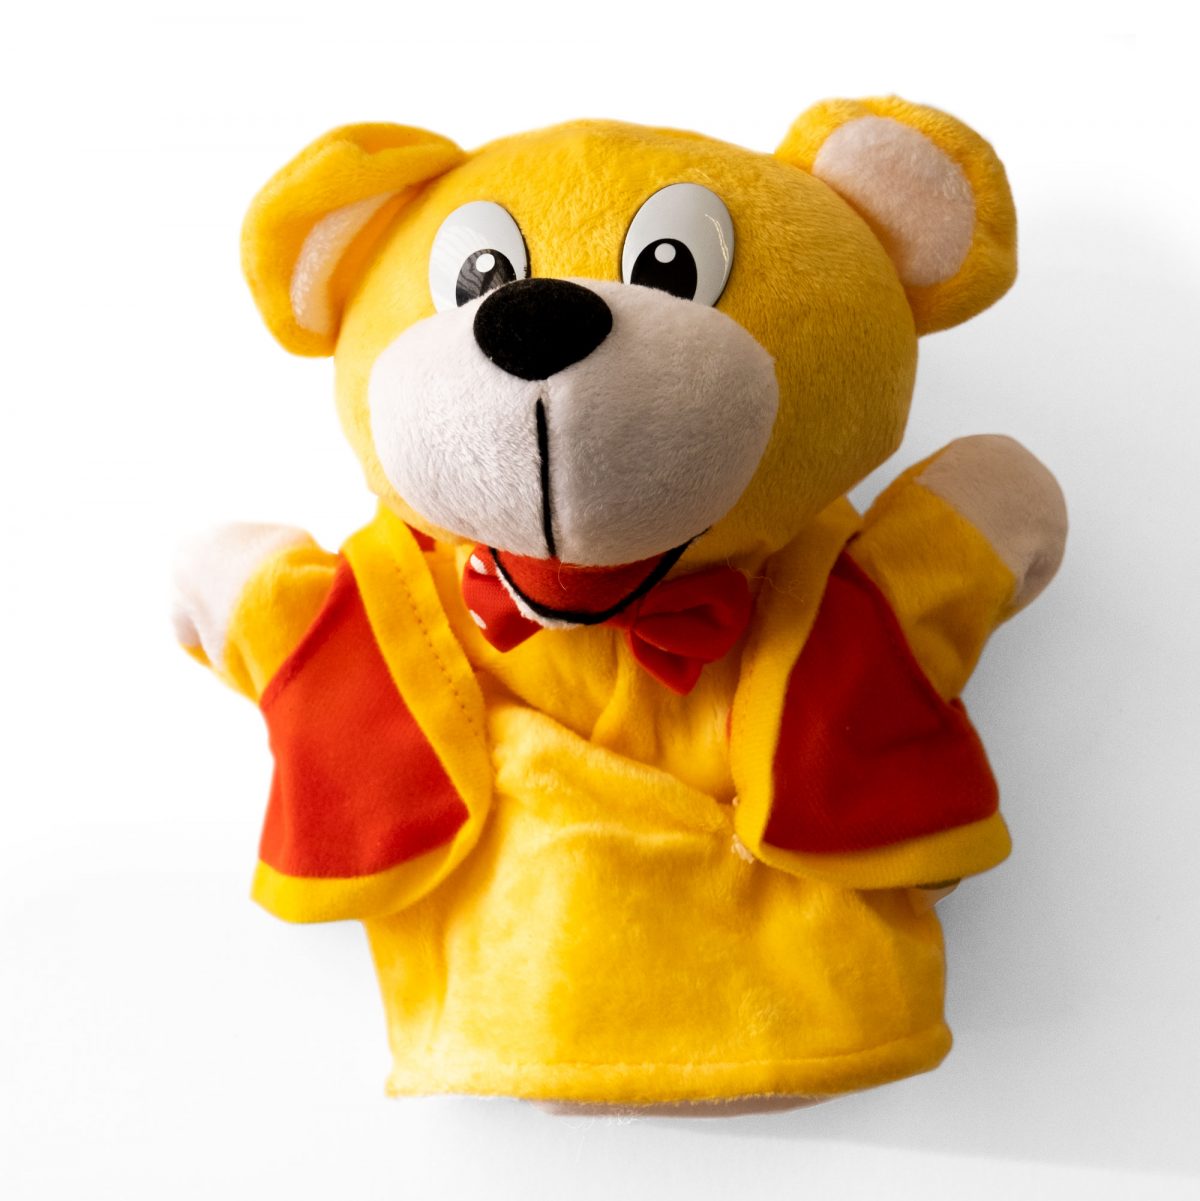 A Woolly Bear hand puppet